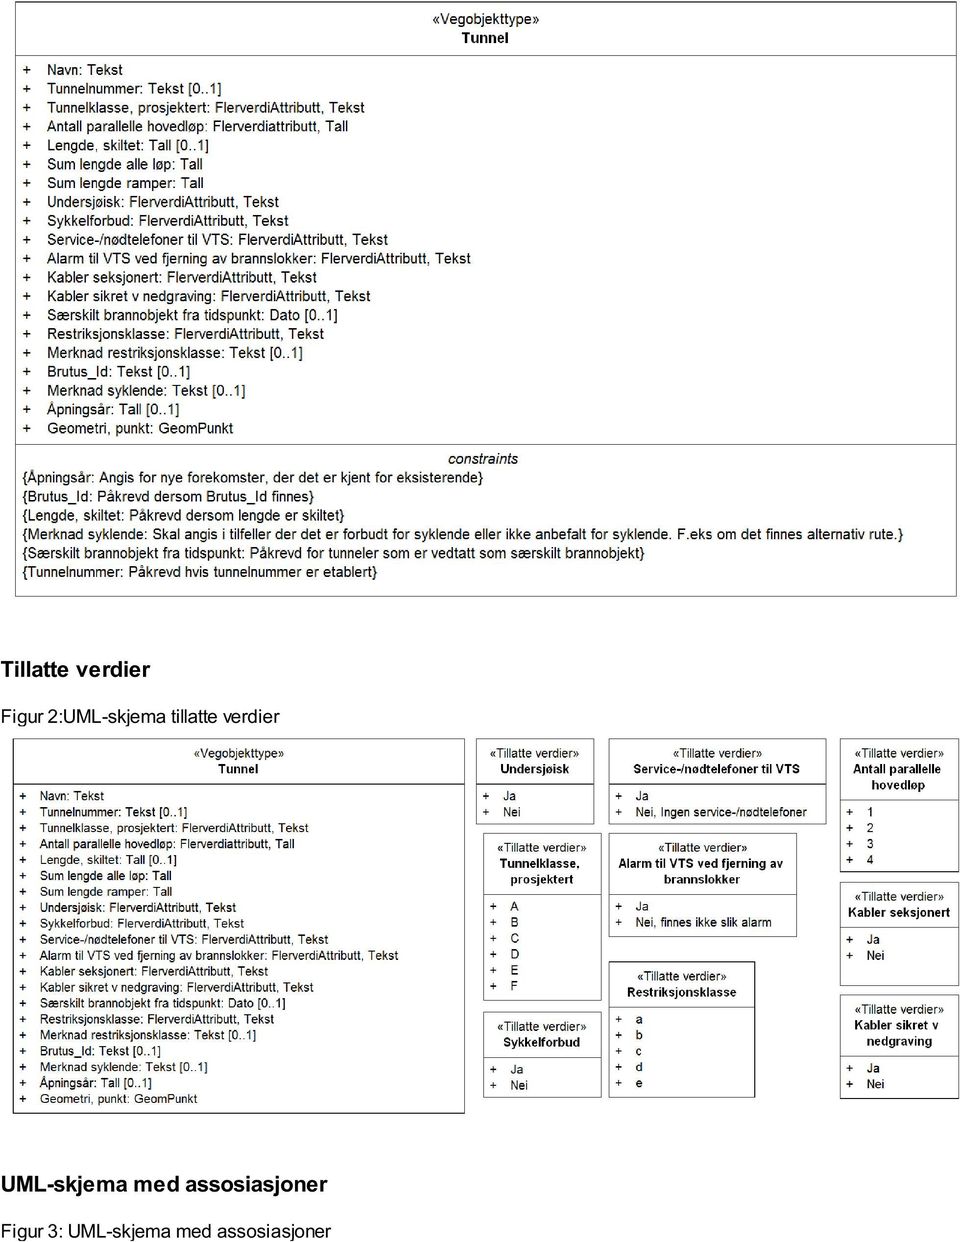 UML-skjema med assosiasjoner